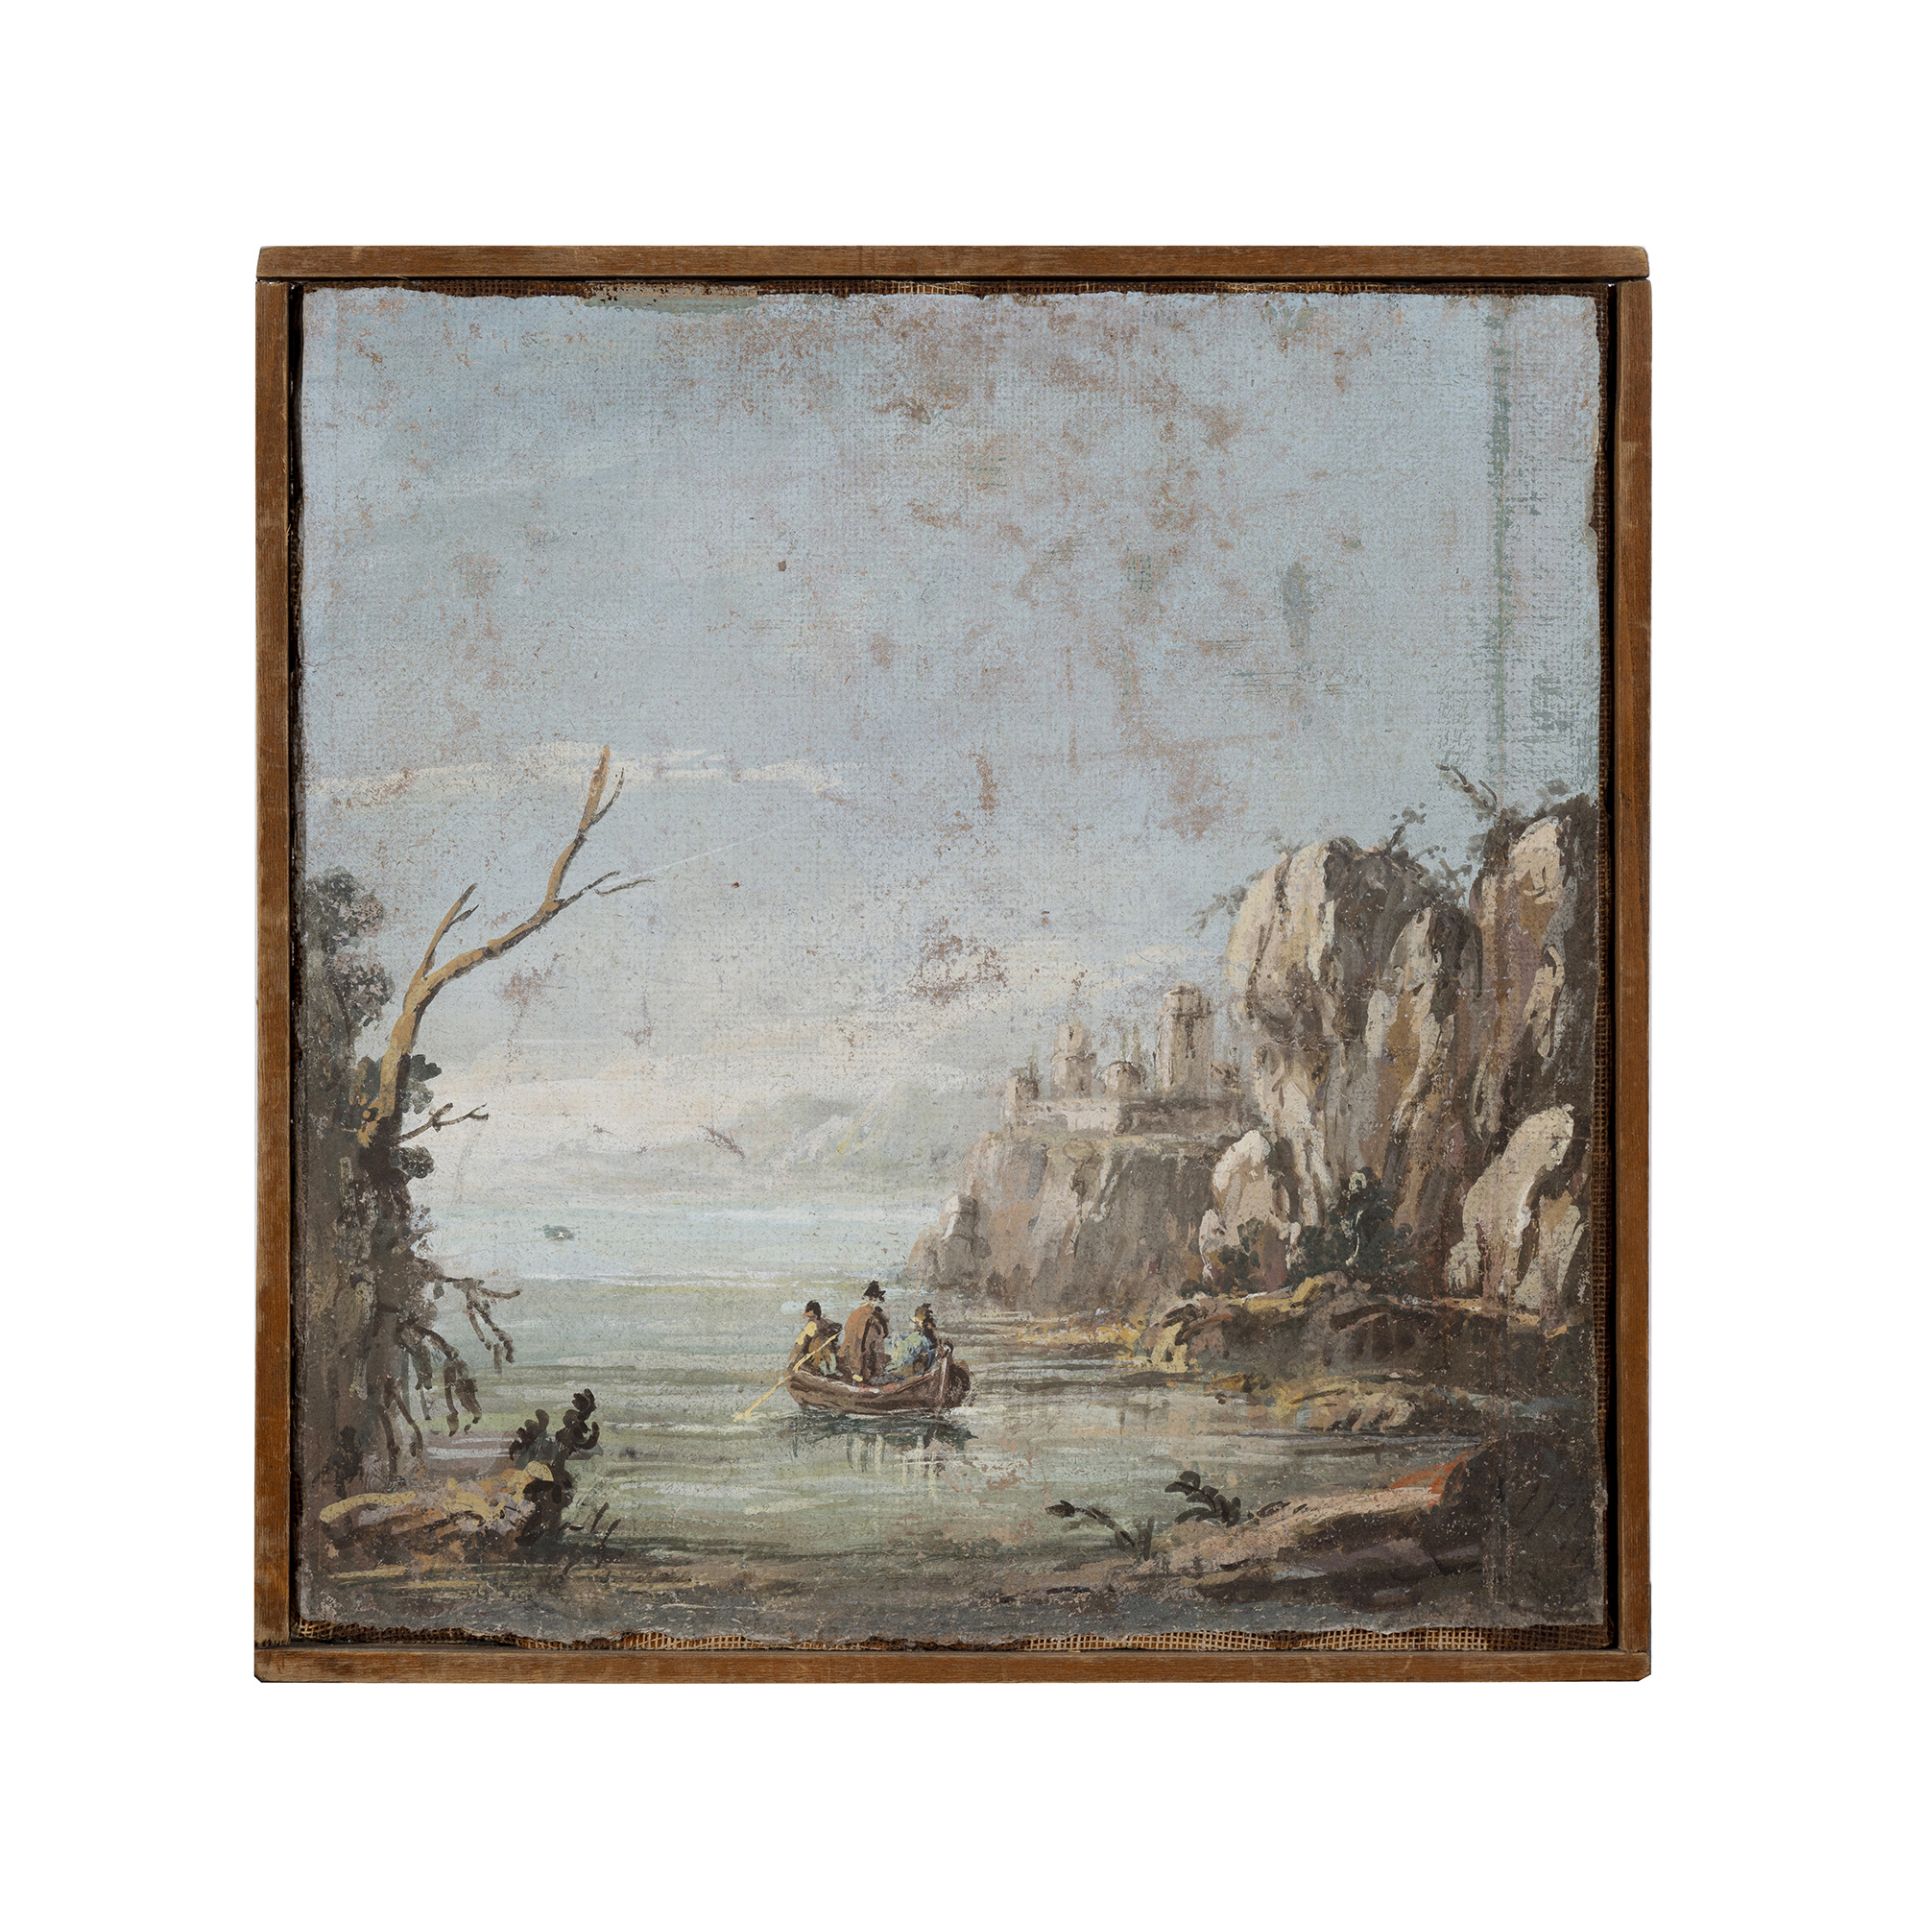 Scuola Italia centrale del XVIII secolo - Image 2 of 8